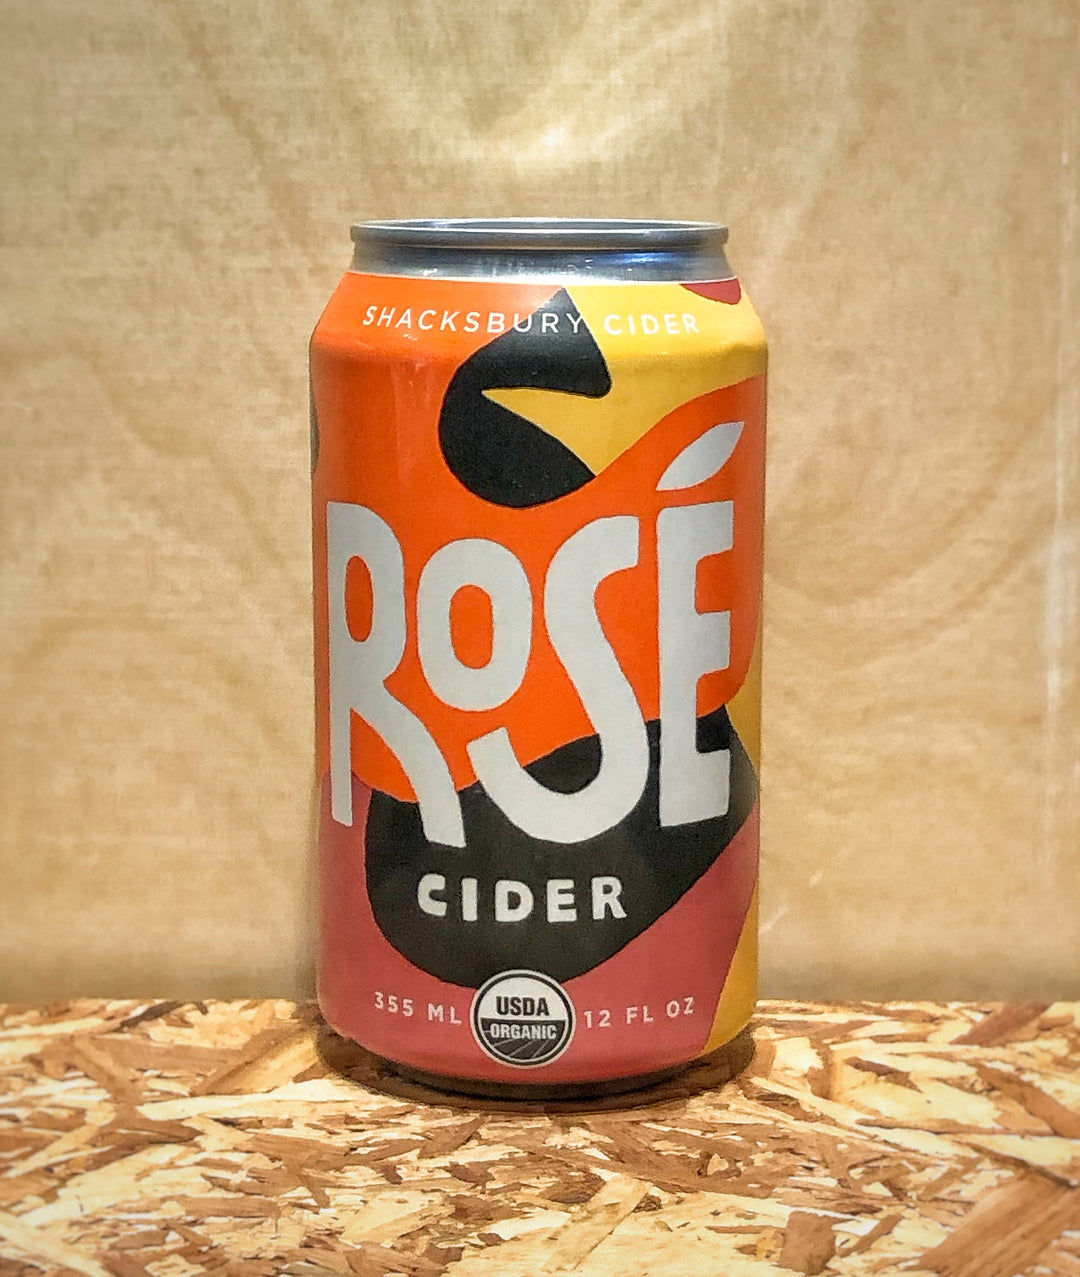 Shacksbury Cider 'Rose Cider' (Vergennes Vermont)